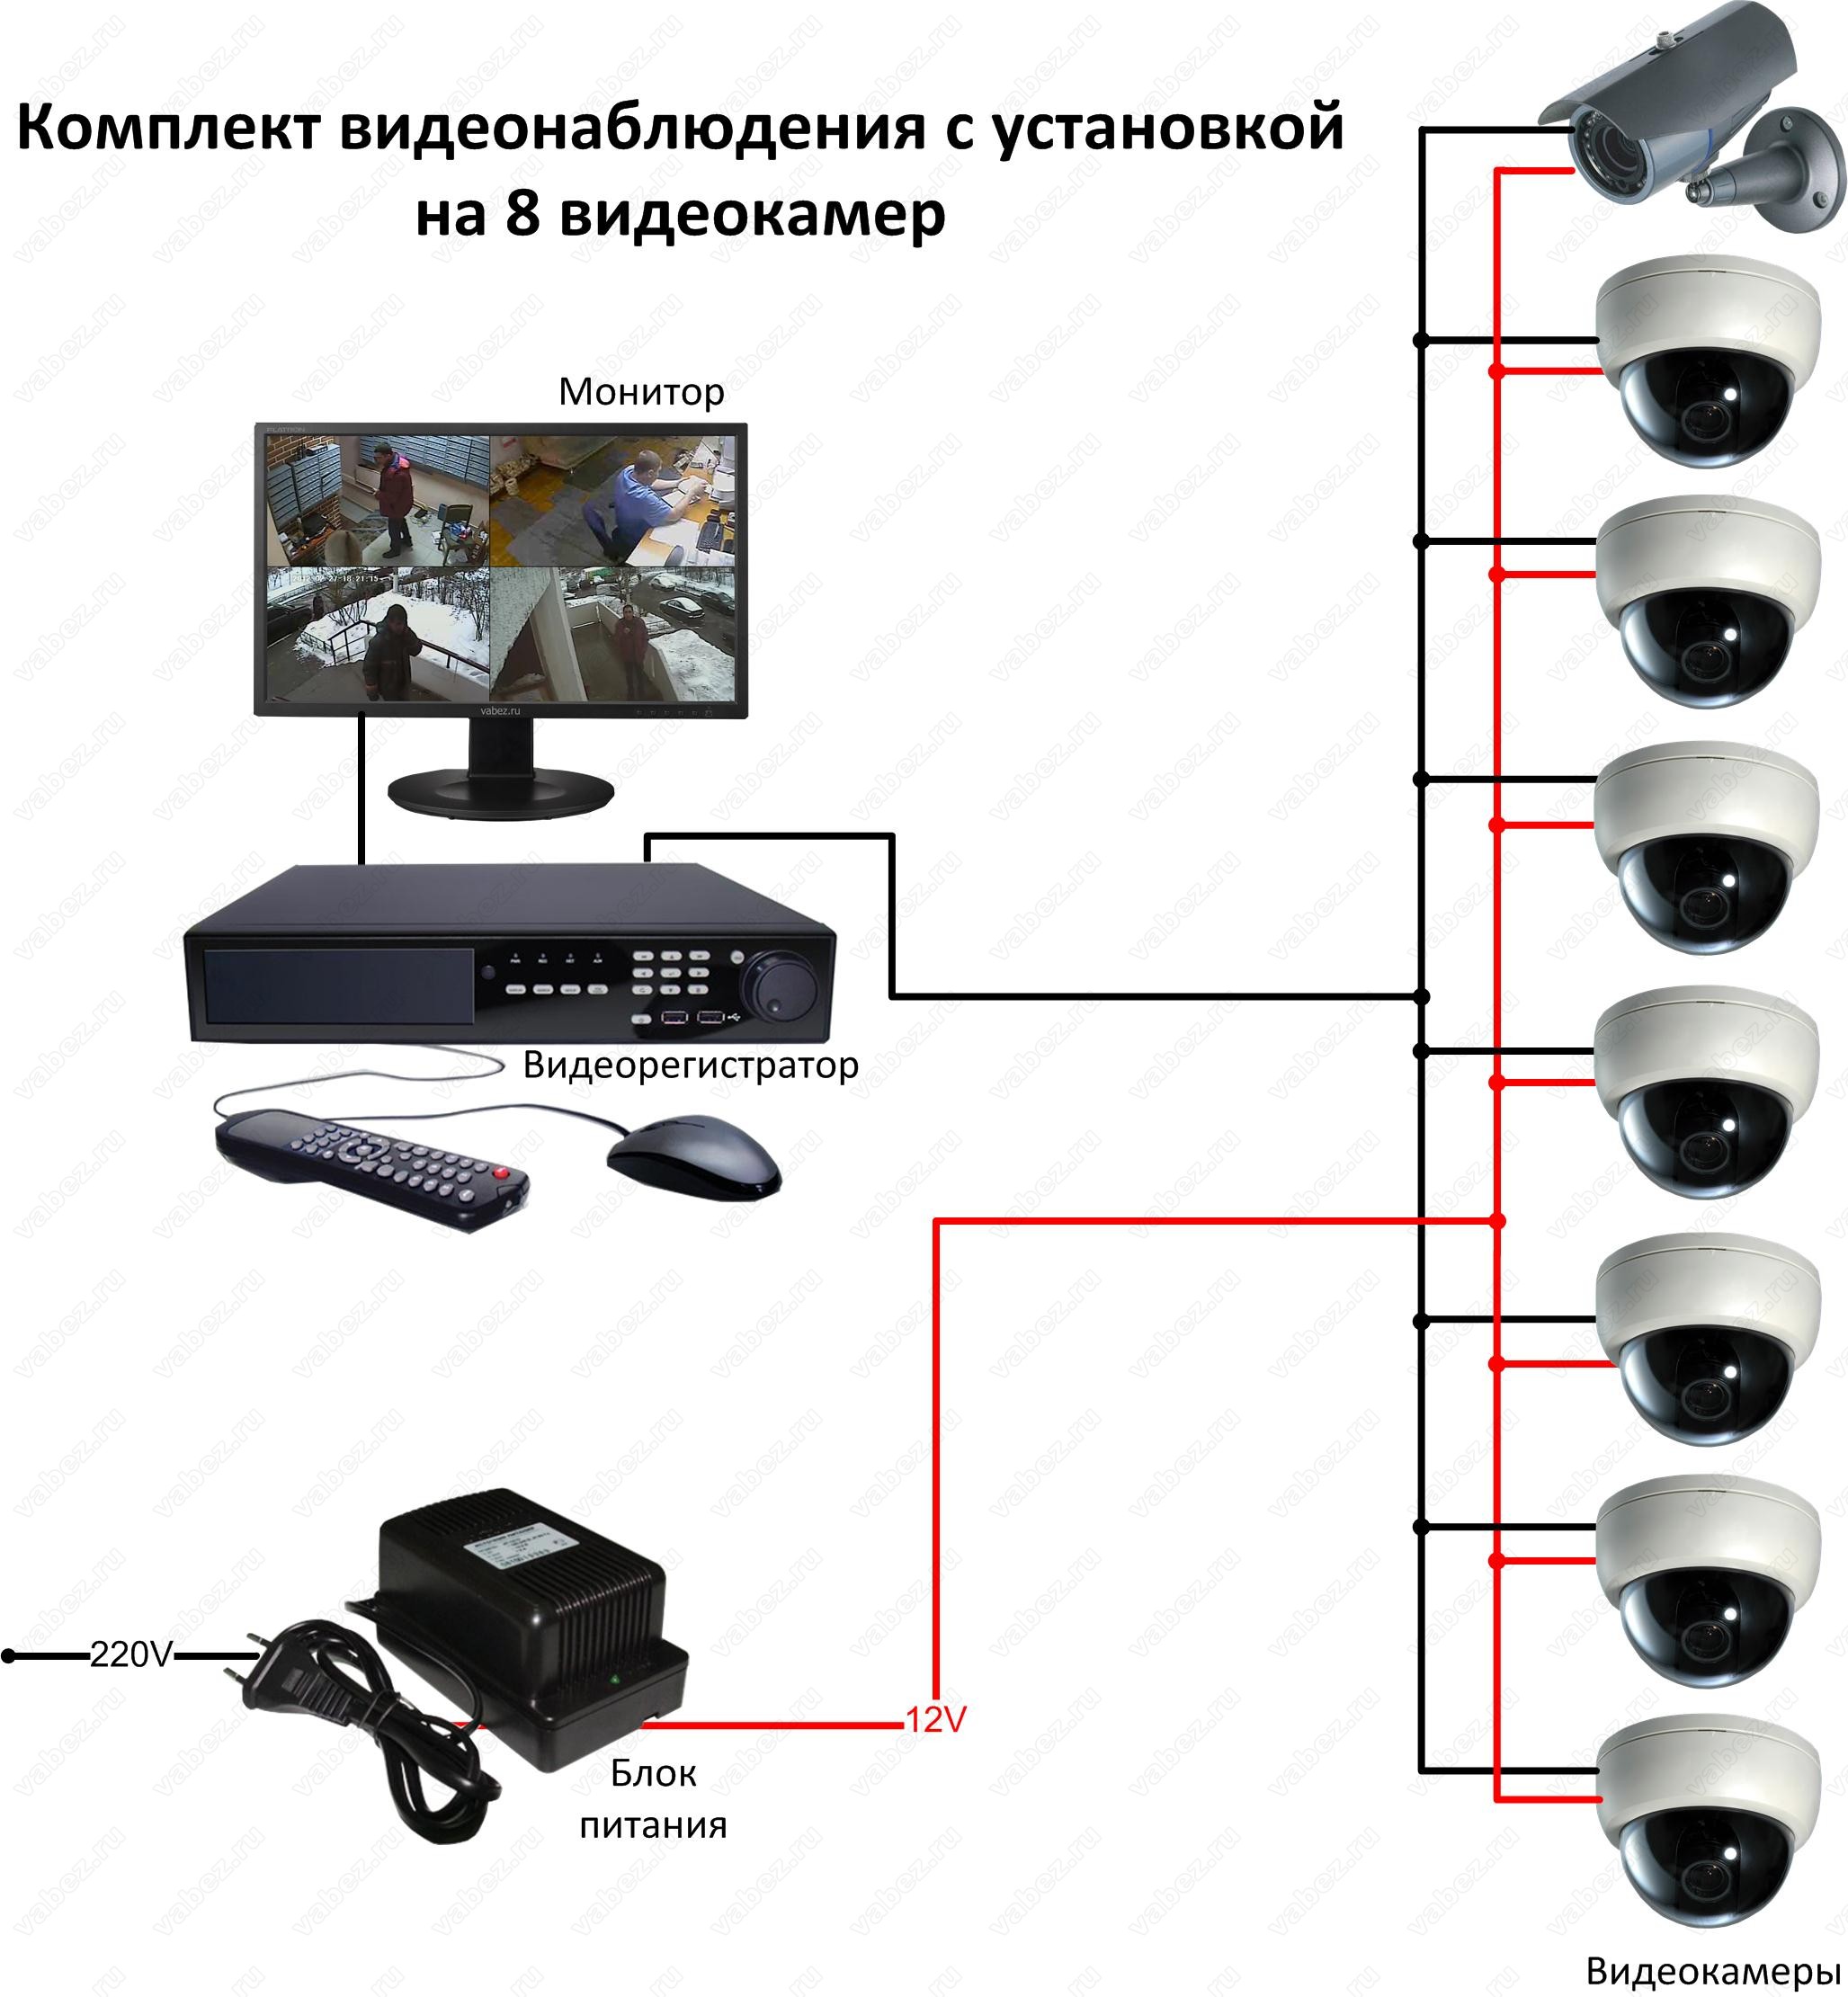 Видео подключение камеры. Схема подключения камеры видеонаблюдения схема. Подсоединение камеры видеонаблюдения схема подключения. Схема подсоединения камер видеонаблюдения. Схема подключения видеокамеры наблюдения.